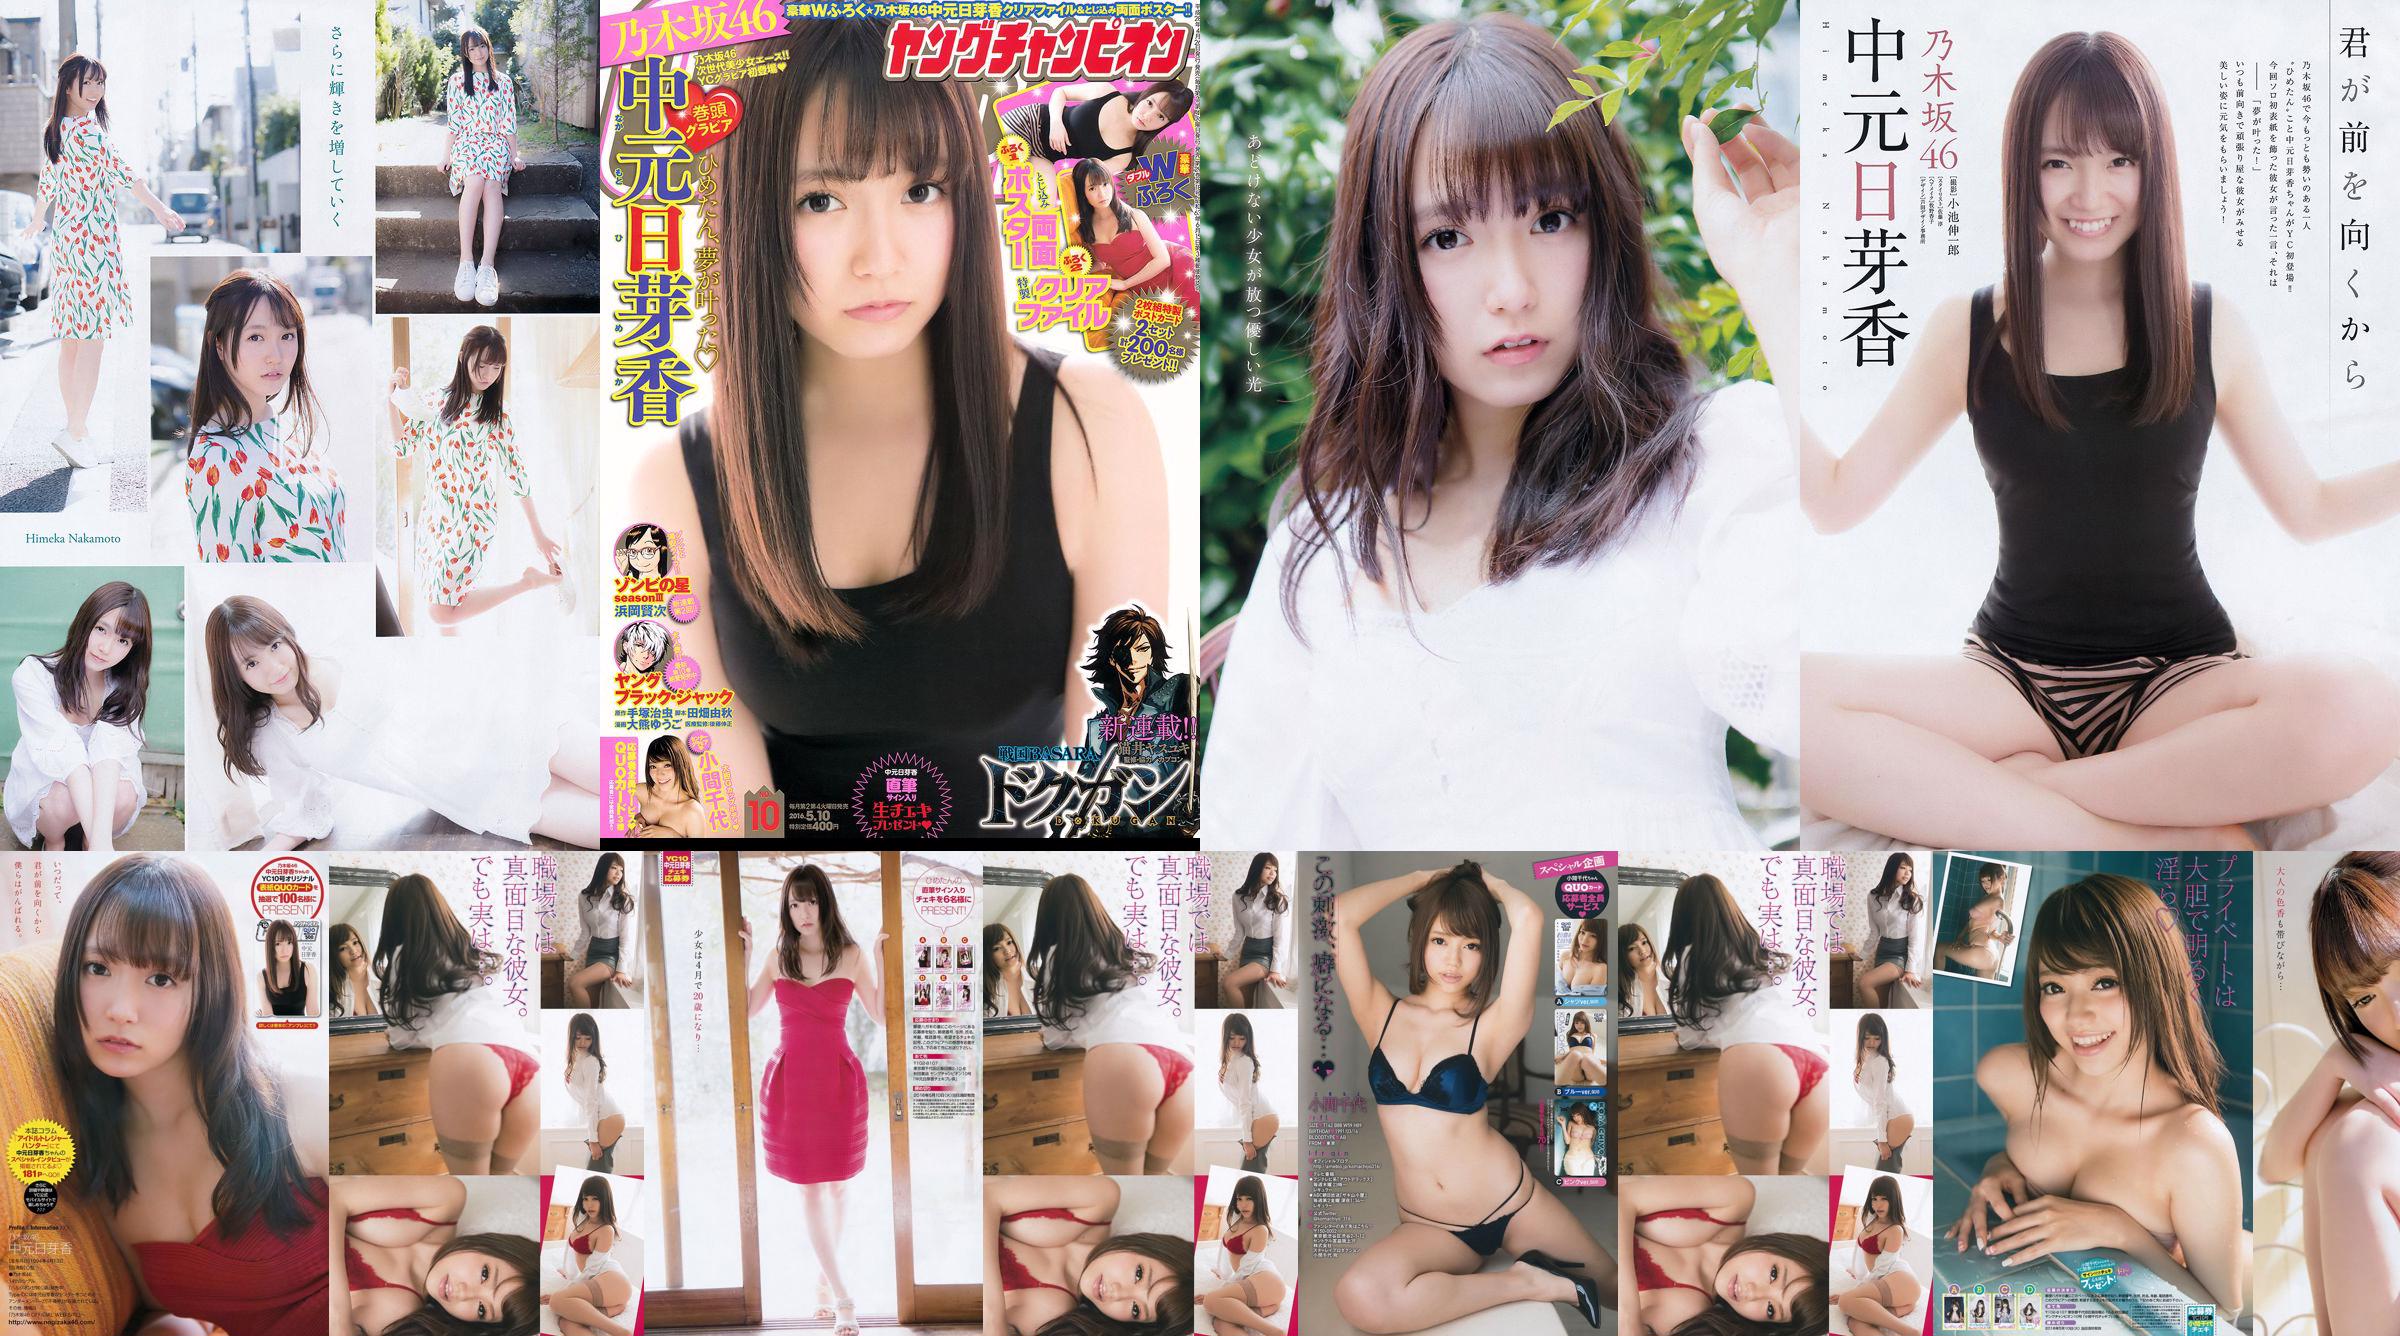 [Junger Champion] Nakamoto Nichiko Koma Chiyo 2016 Nr. 10 Fotomagazin No.0eac10 Seite 3